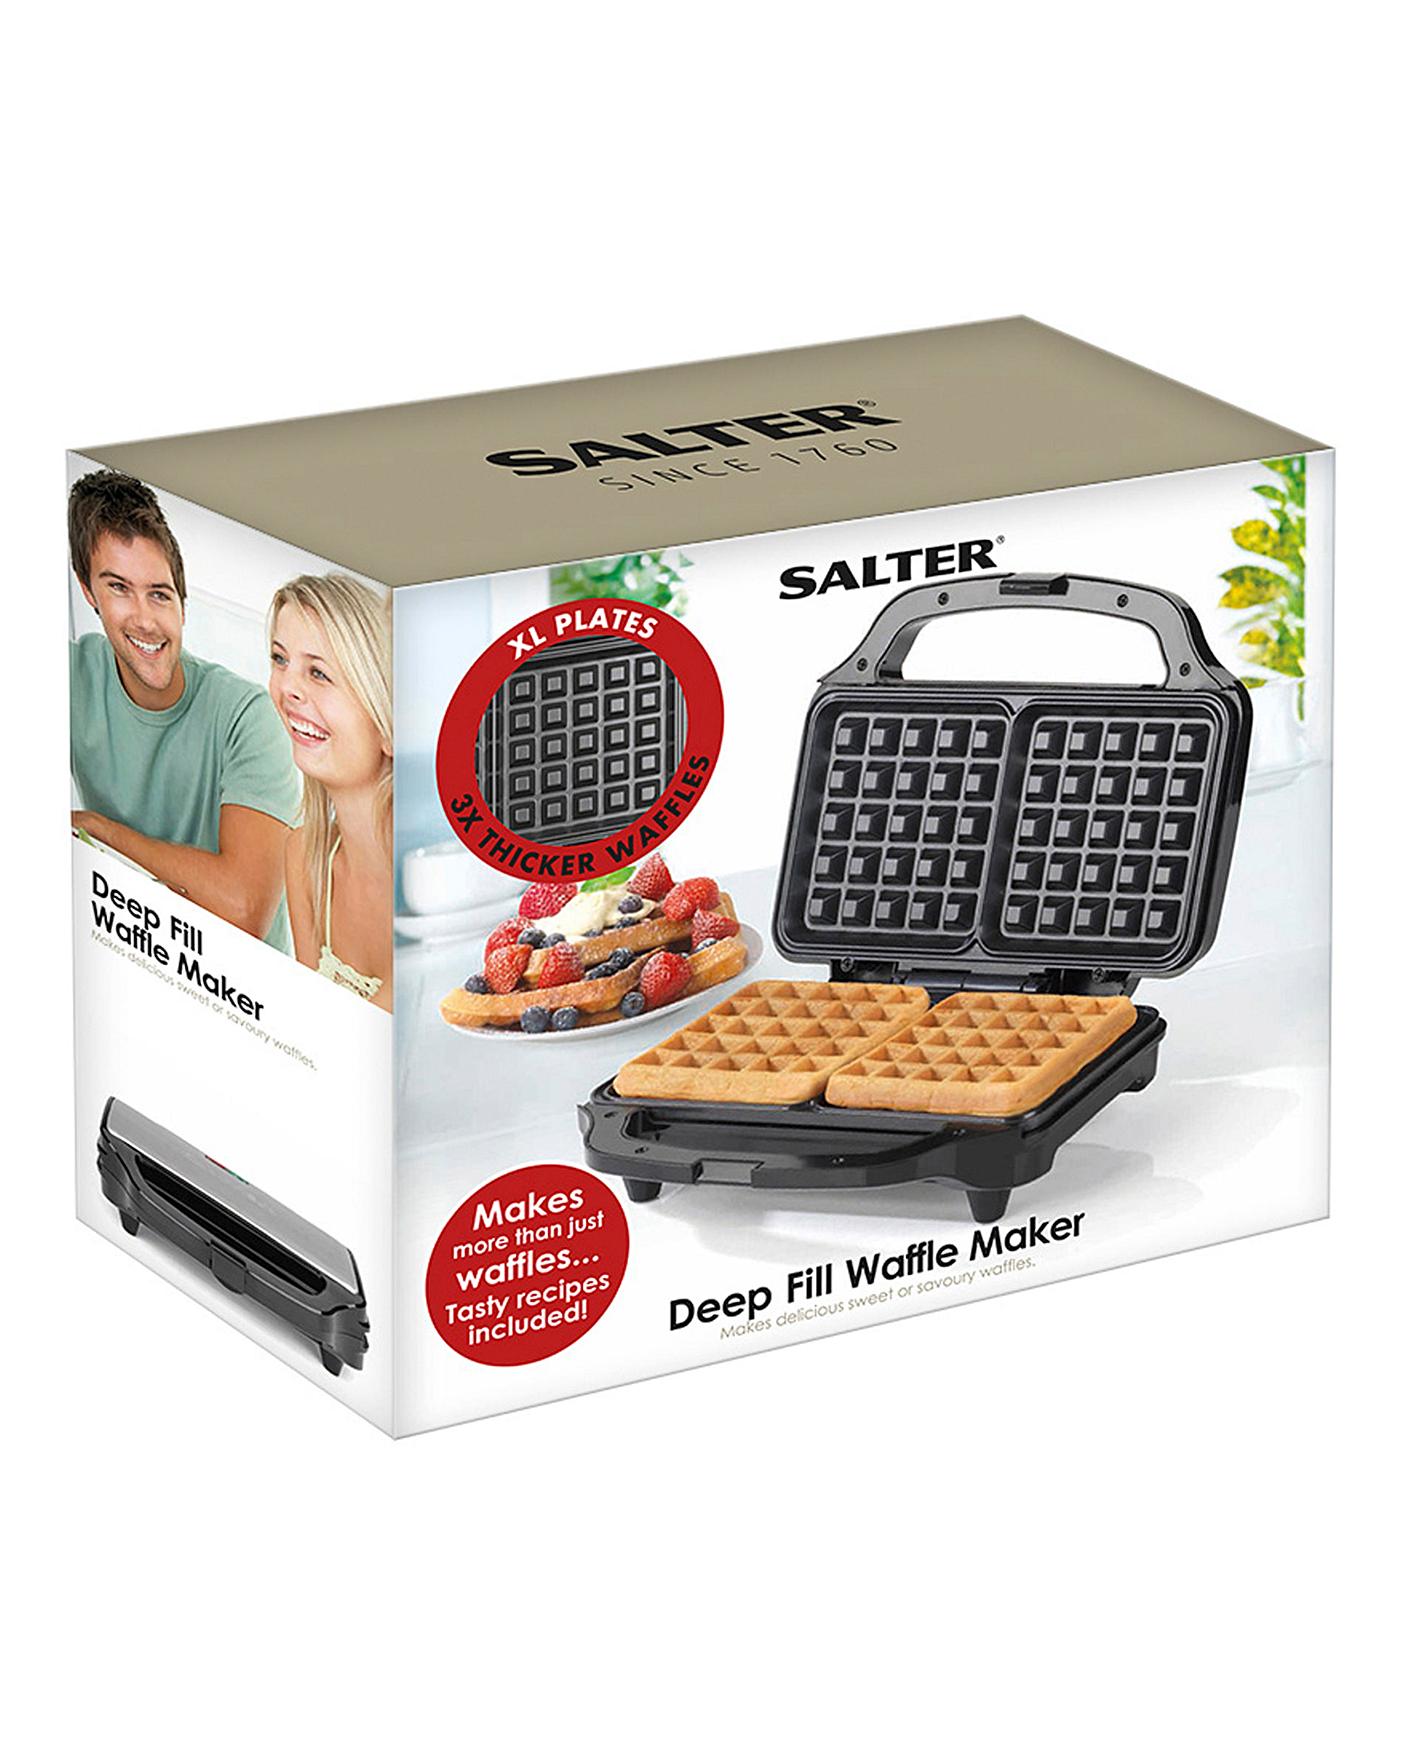 Waffle maker's. Waffle maker. Вафельница Mini maker Waffle. Waffle maker g120. Waffle maker нонейм.